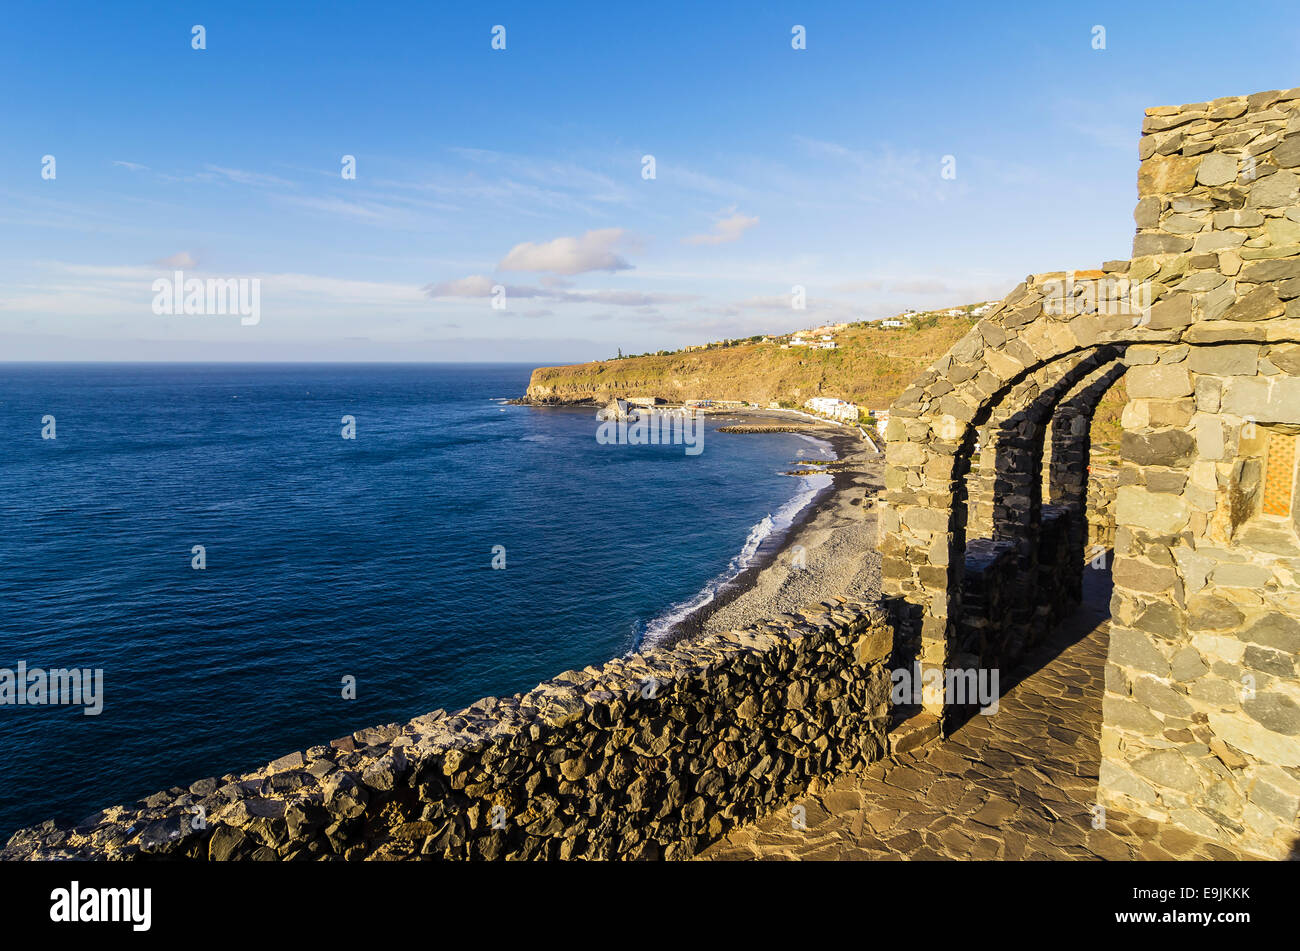 Vue sur la plage et la ville, Laguna de Santiago, La Gomera, Canary Islands, Spain Banque D'Images